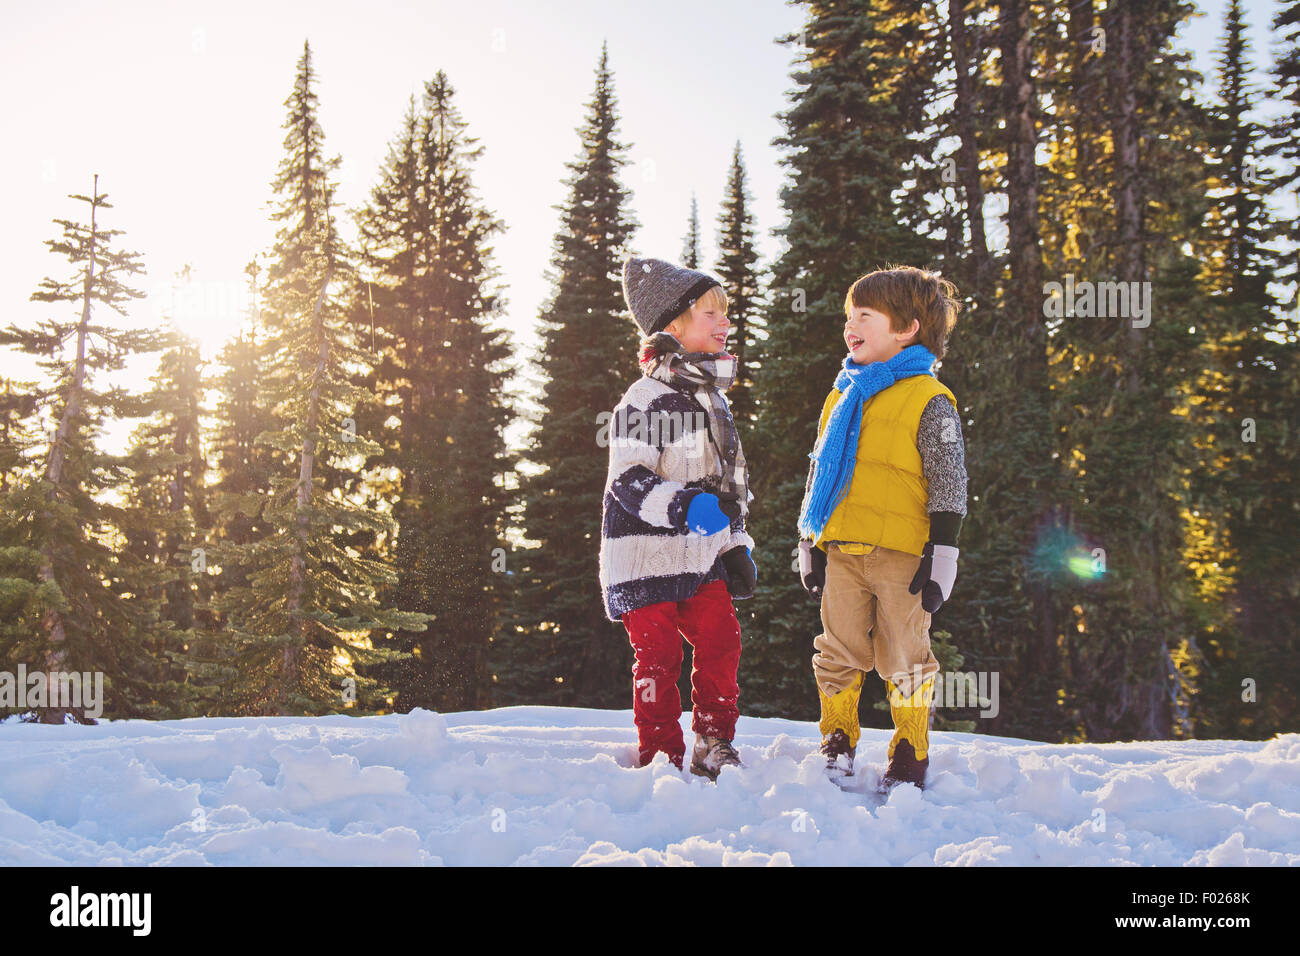 Deux jeunes garçons rire dans la neige, arbres en arrière-plan Banque D'Images